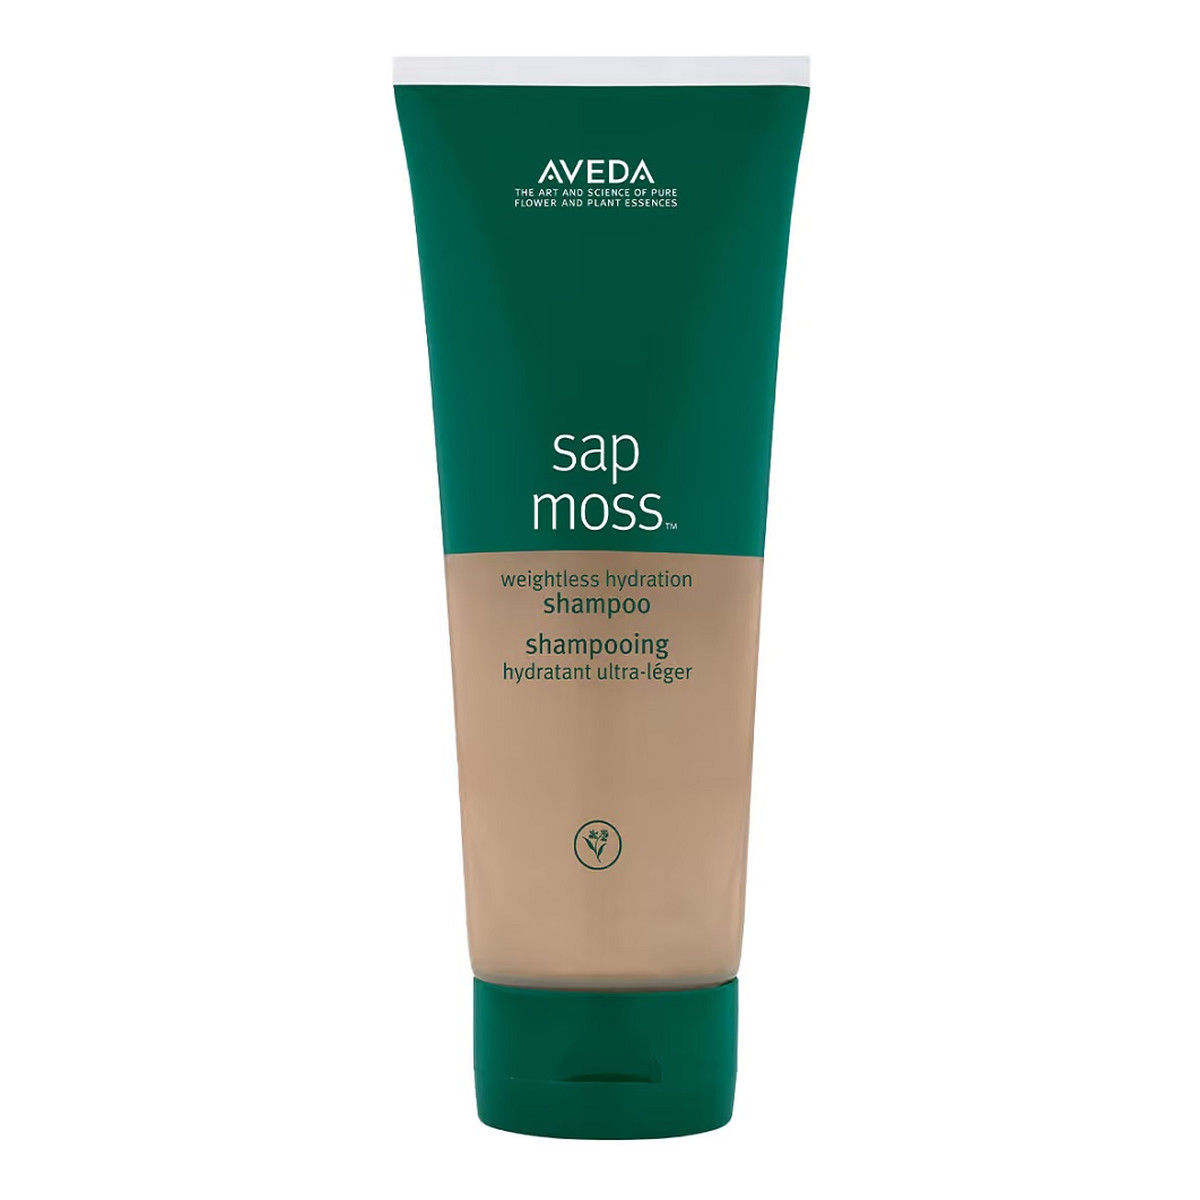 Aveda Sap moss weightless hydration shampoo nawilżający szampon do włosów 200ml